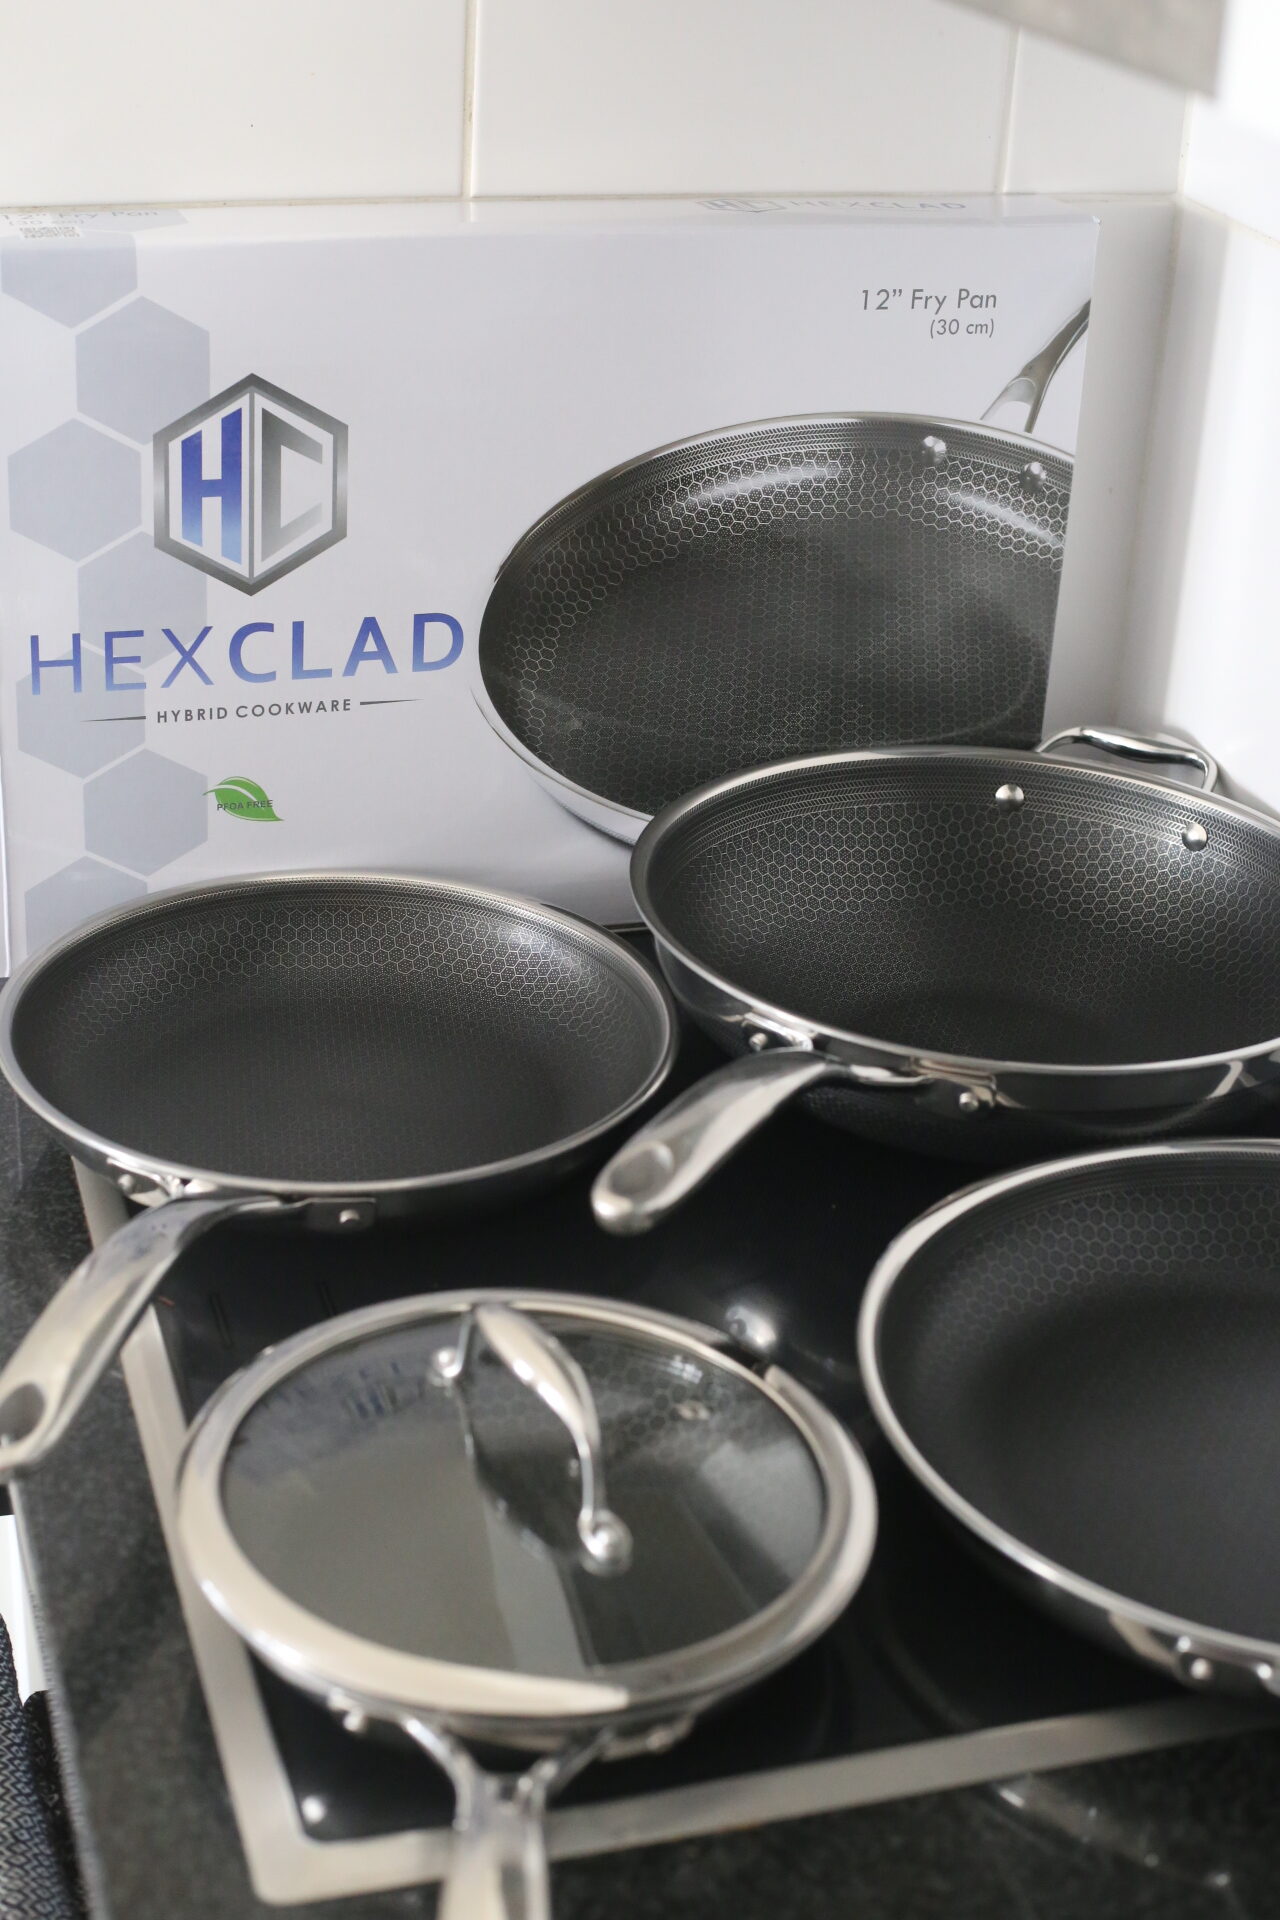 Hexclad Pan: My Honest Review of Hexclad Hybrid Cookware - Organic